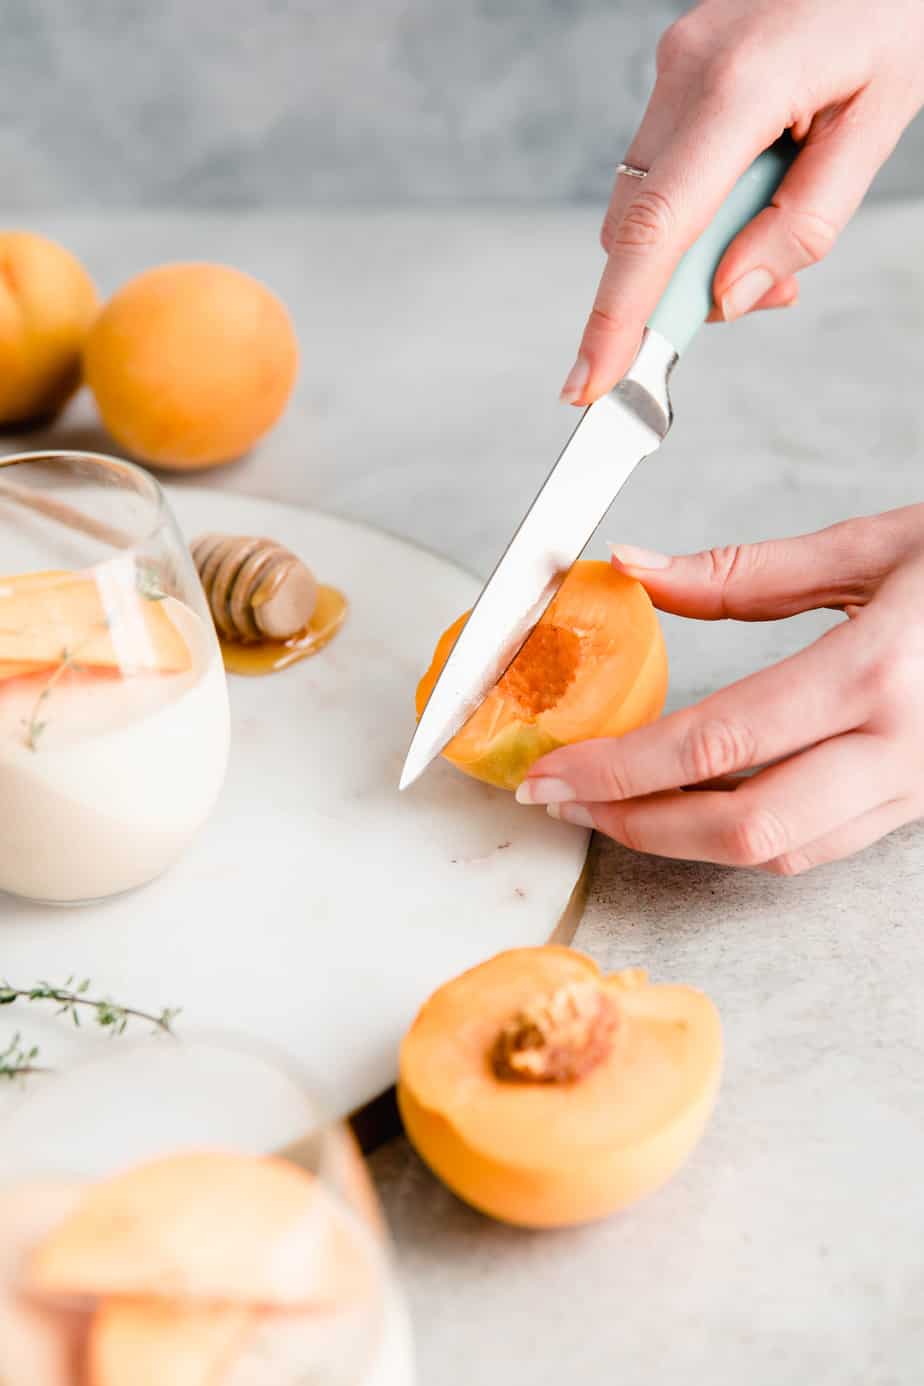 A person cutting a peach